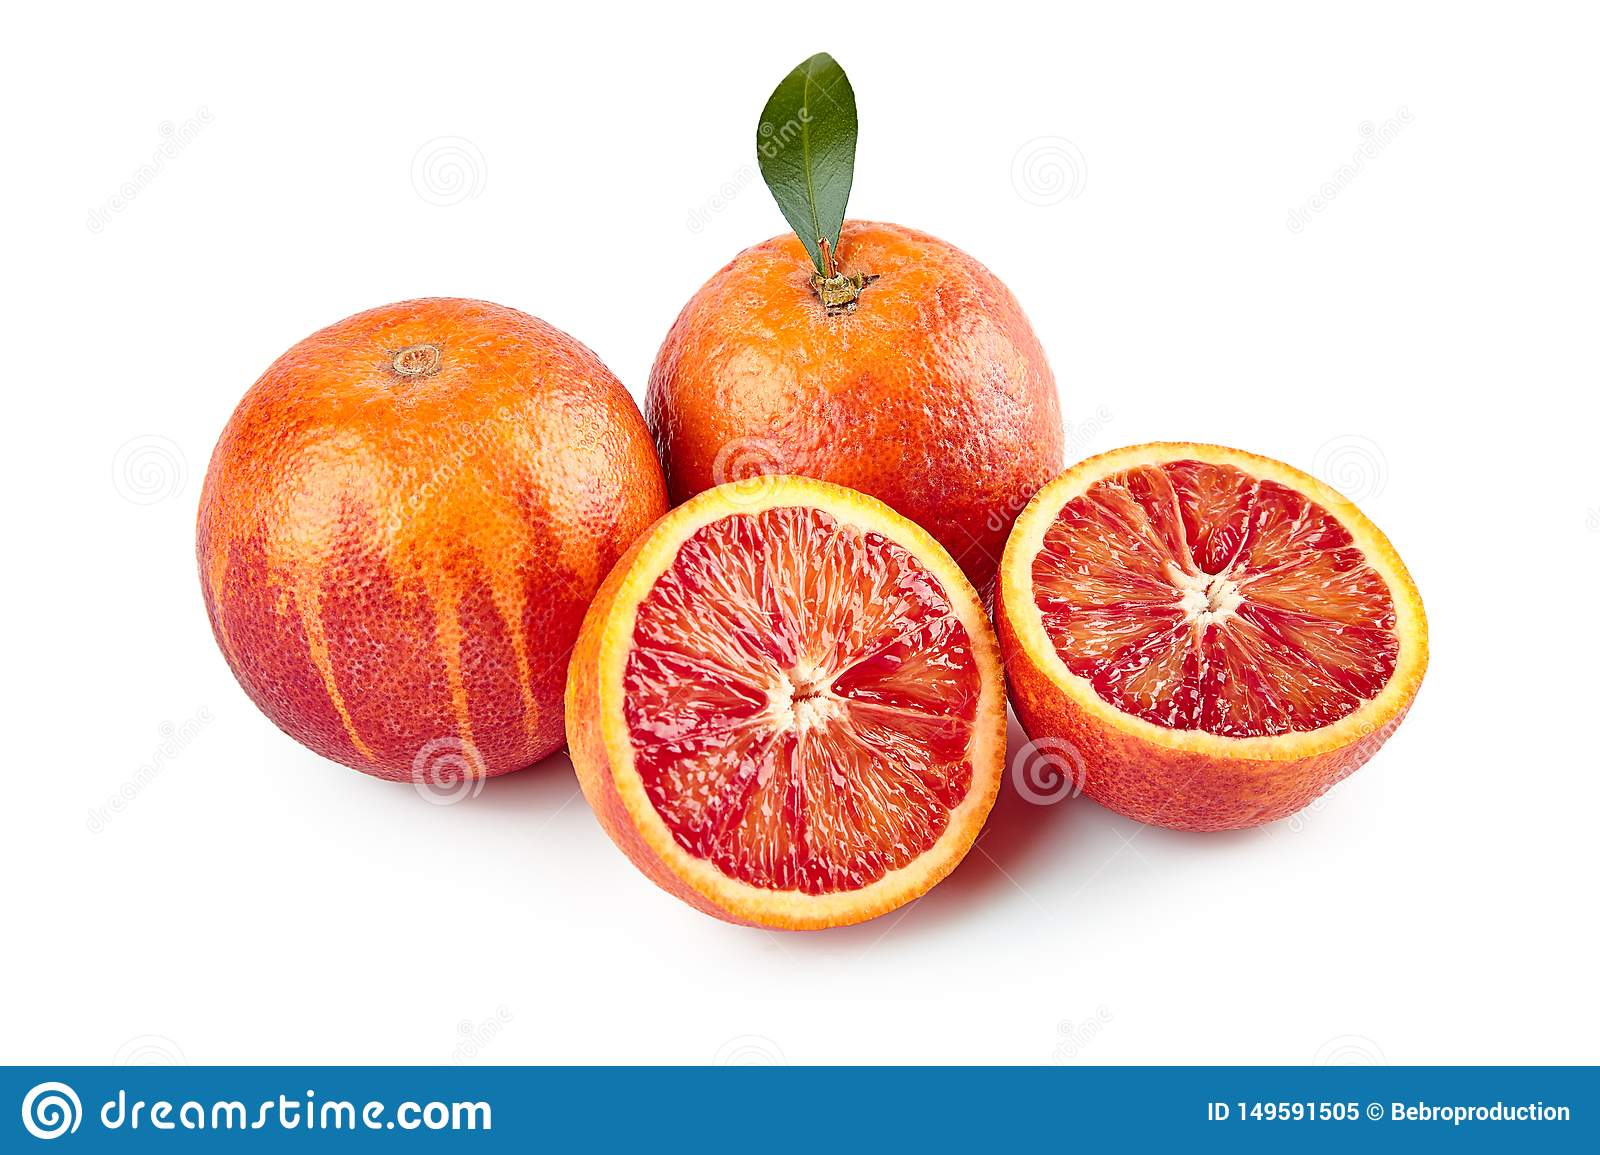 Экзотический апельсин - фрукт или ягода? сорта вечнозеленого дерева и их описание, польза и вред растения